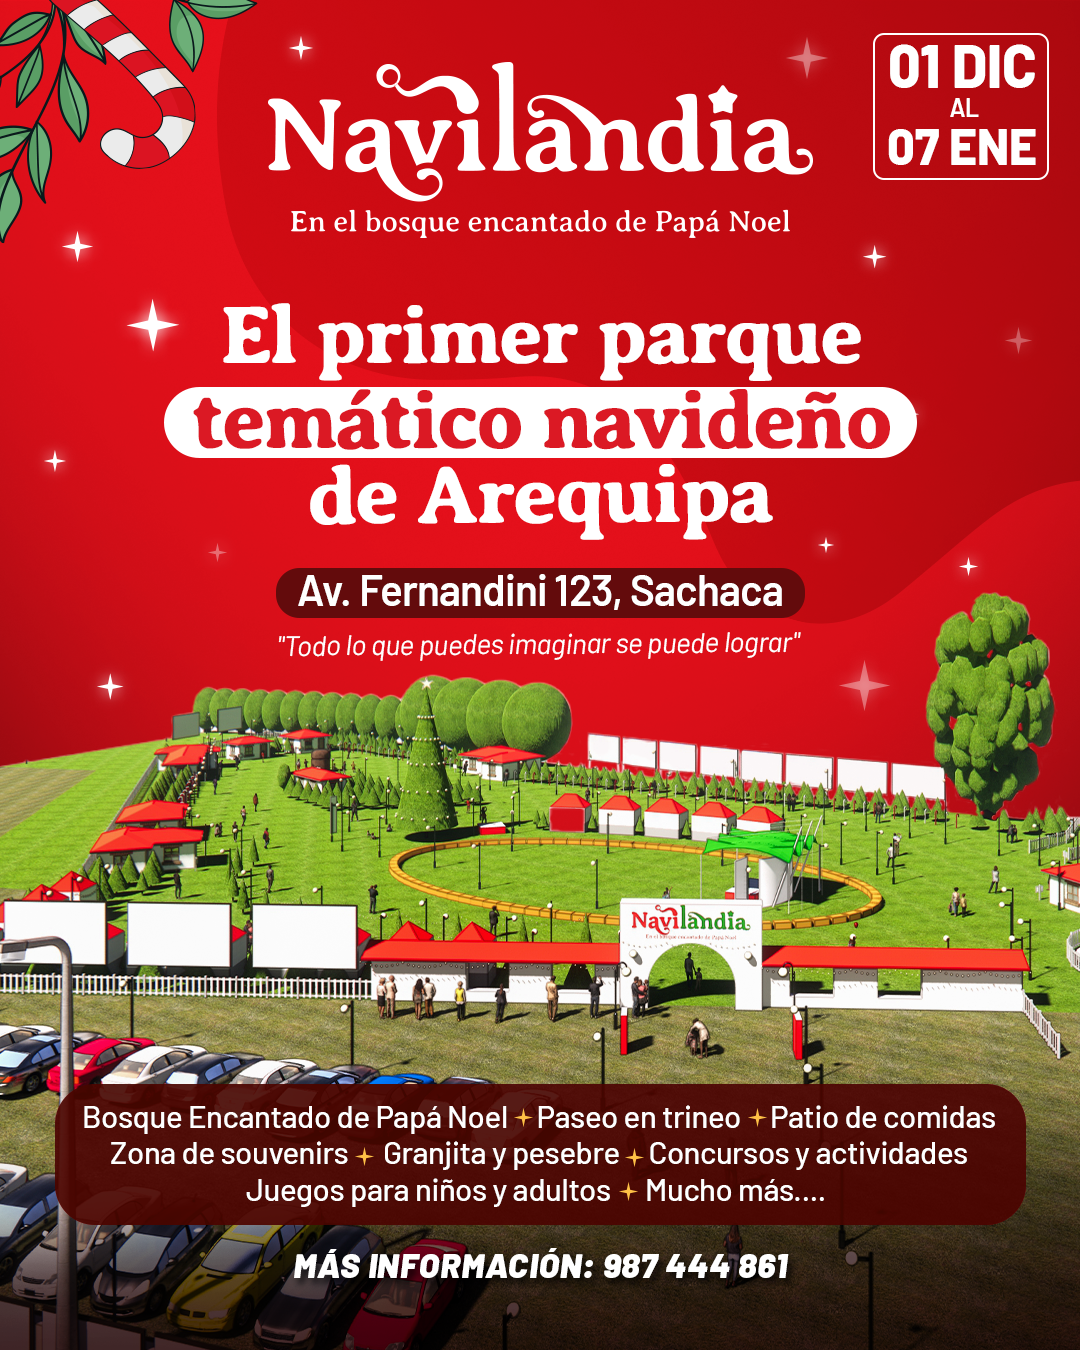 Navilandia, en el bosque encantado de Papá Noel, Arequipa